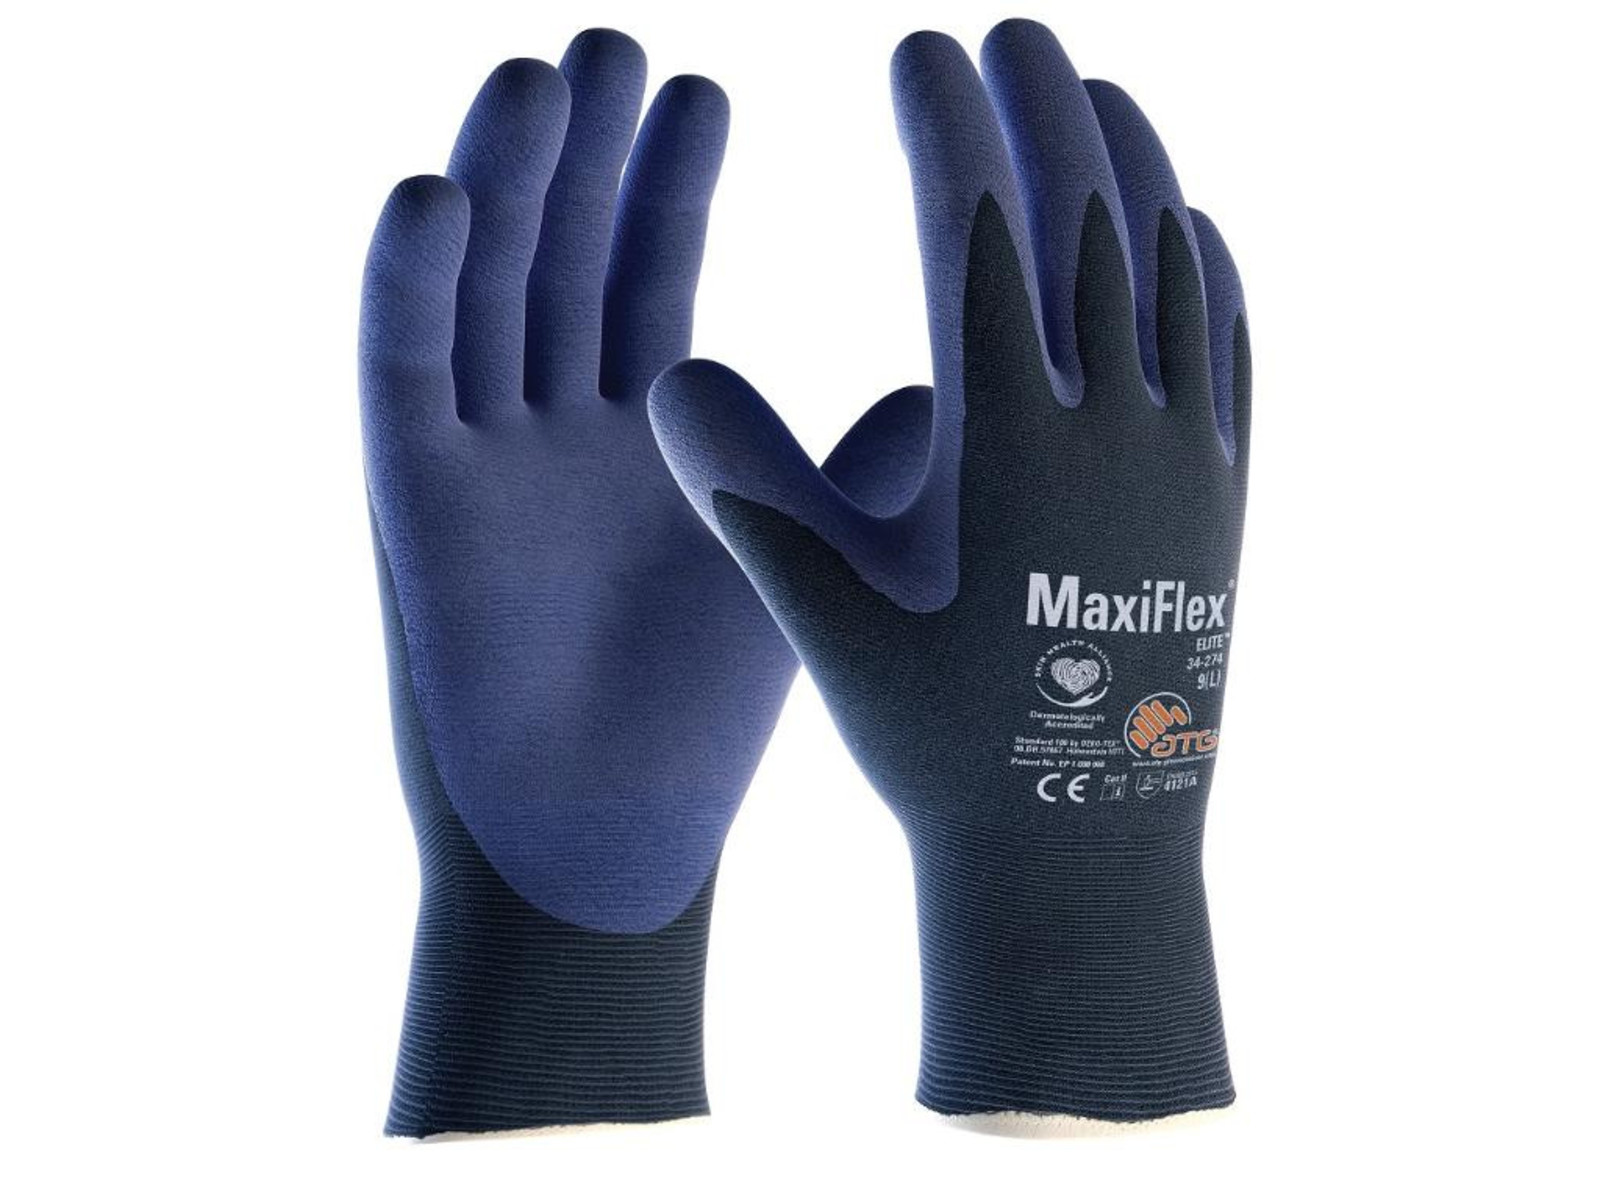 Pracovné rukavice ATG MaxiFlex Elite 34-274 - veľkosť: 8/M, farba: navy